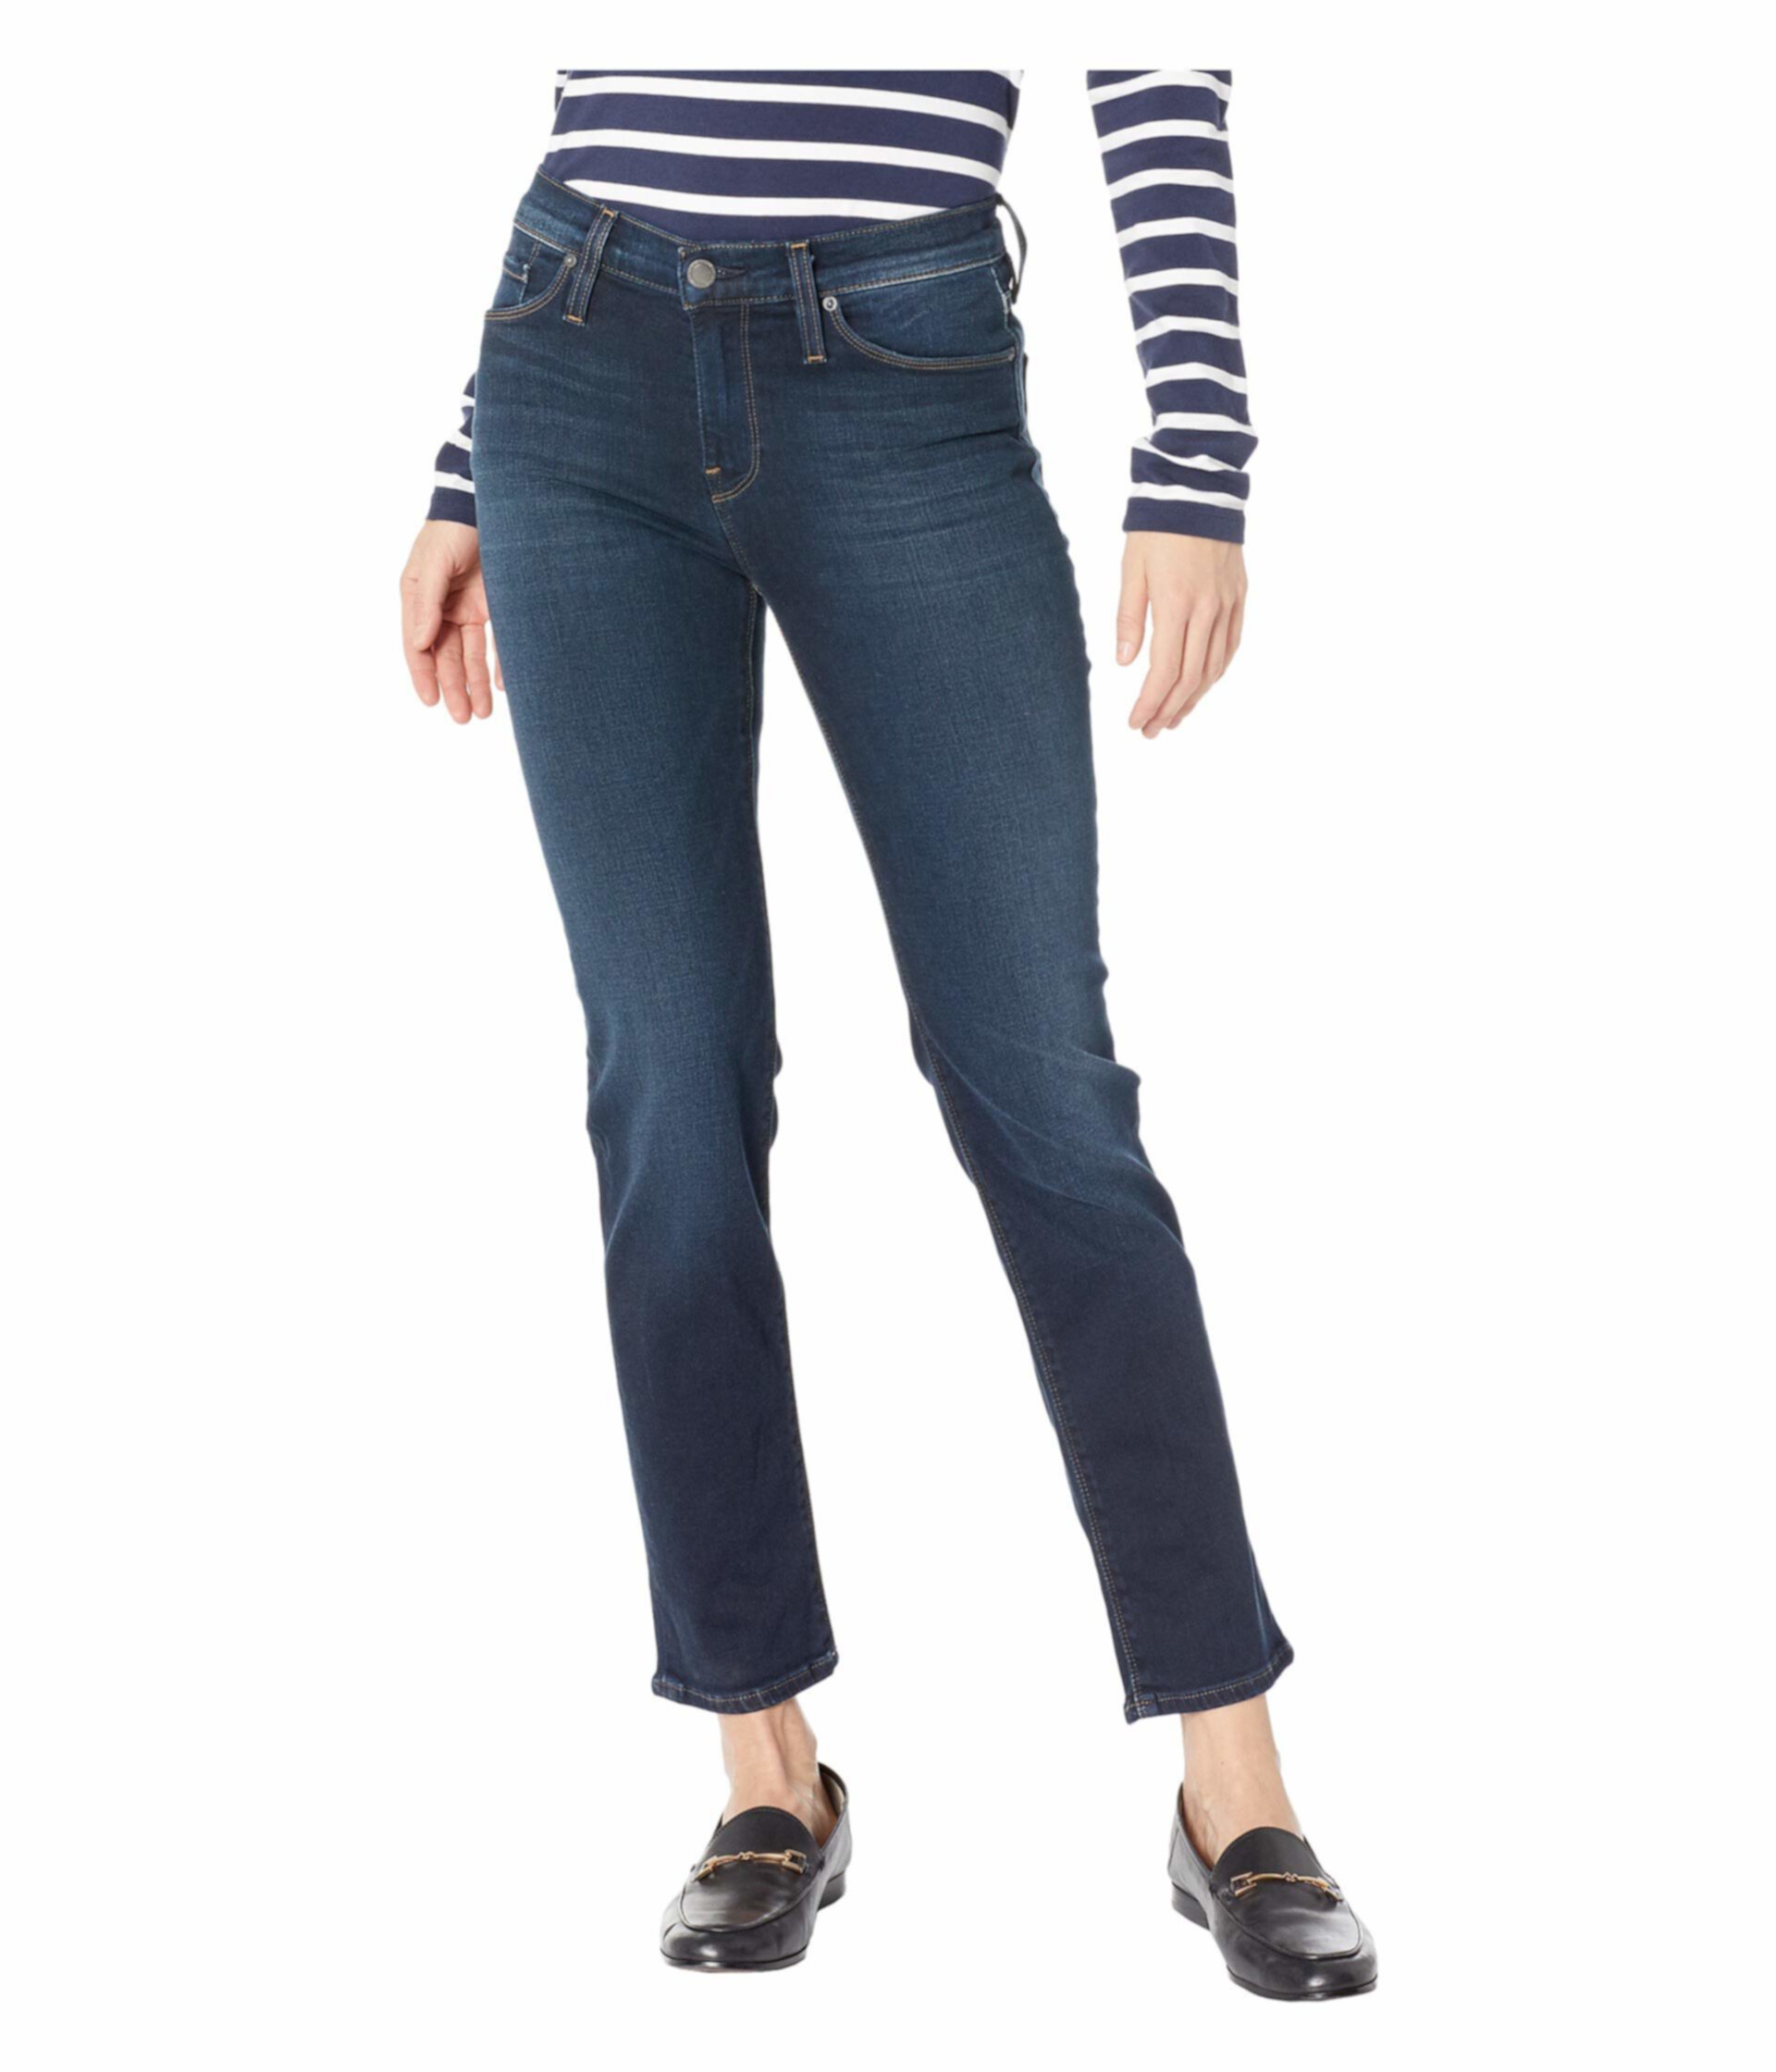 Сигаретные джинсы Nico со средней посадкой в Airline Clean Hudson Jeans